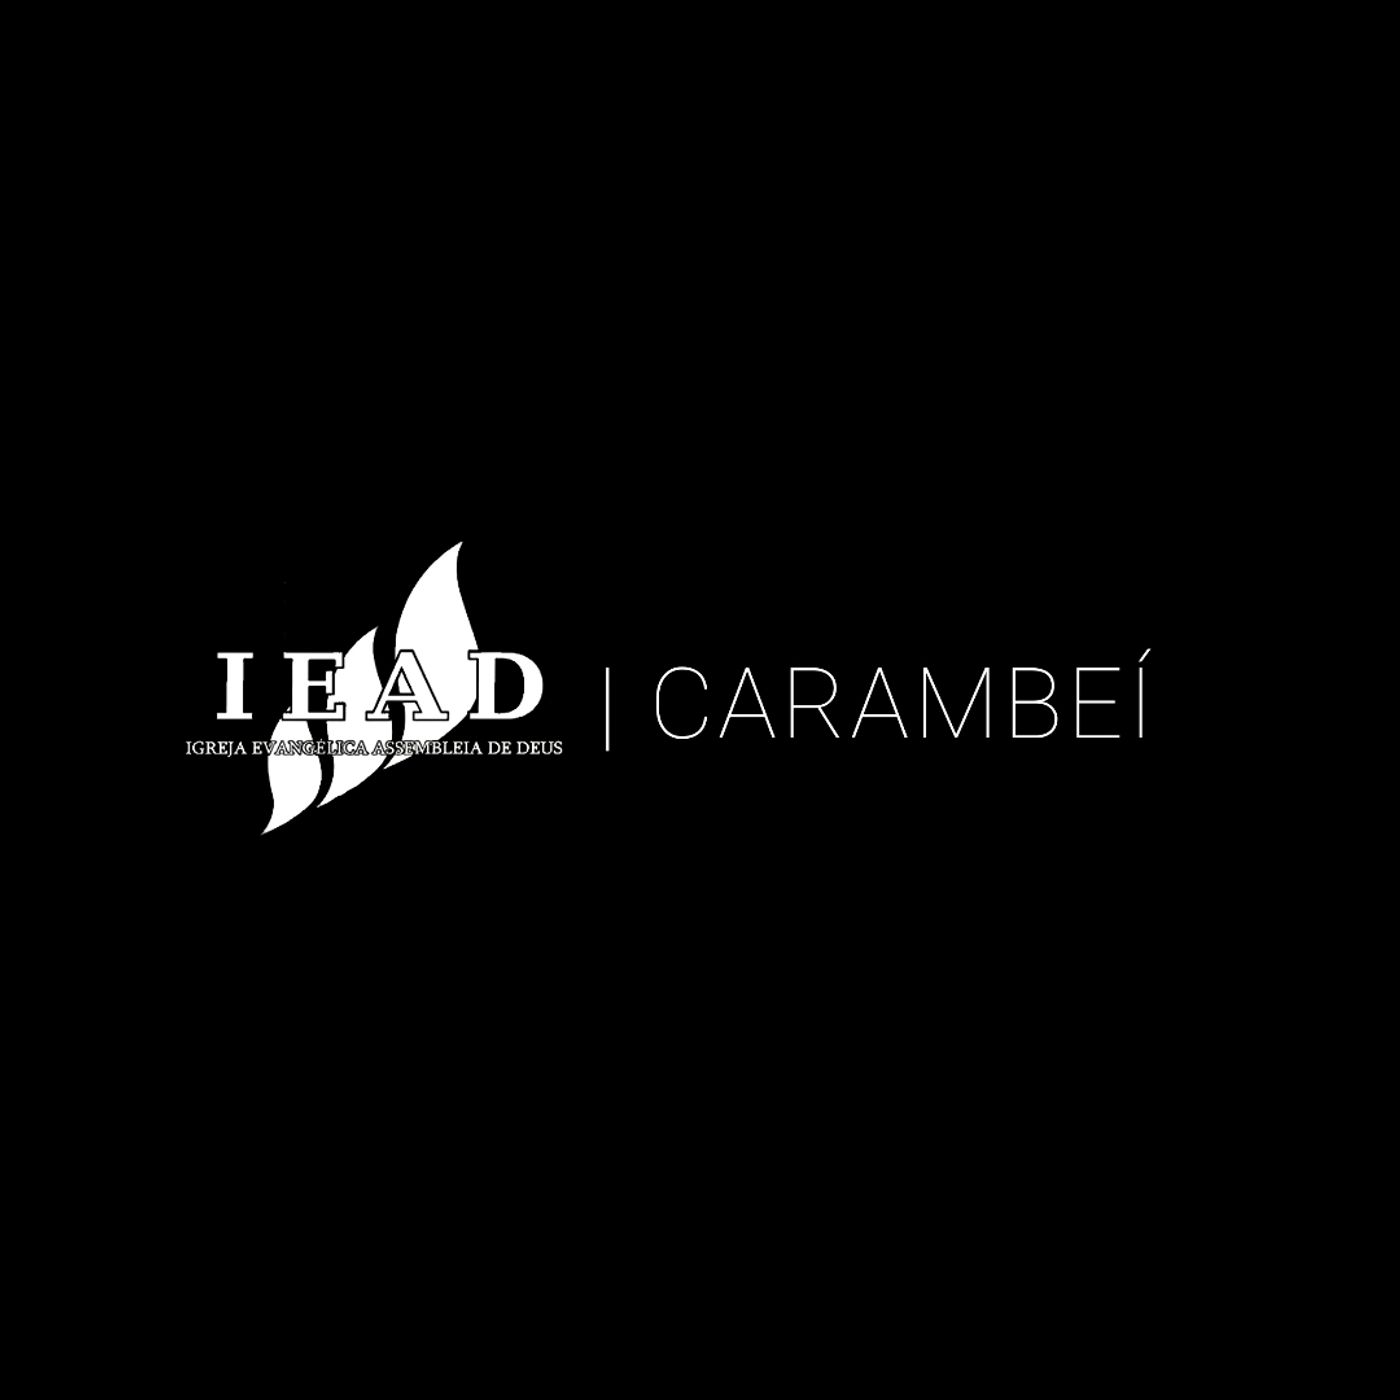 IEAD Carambeí